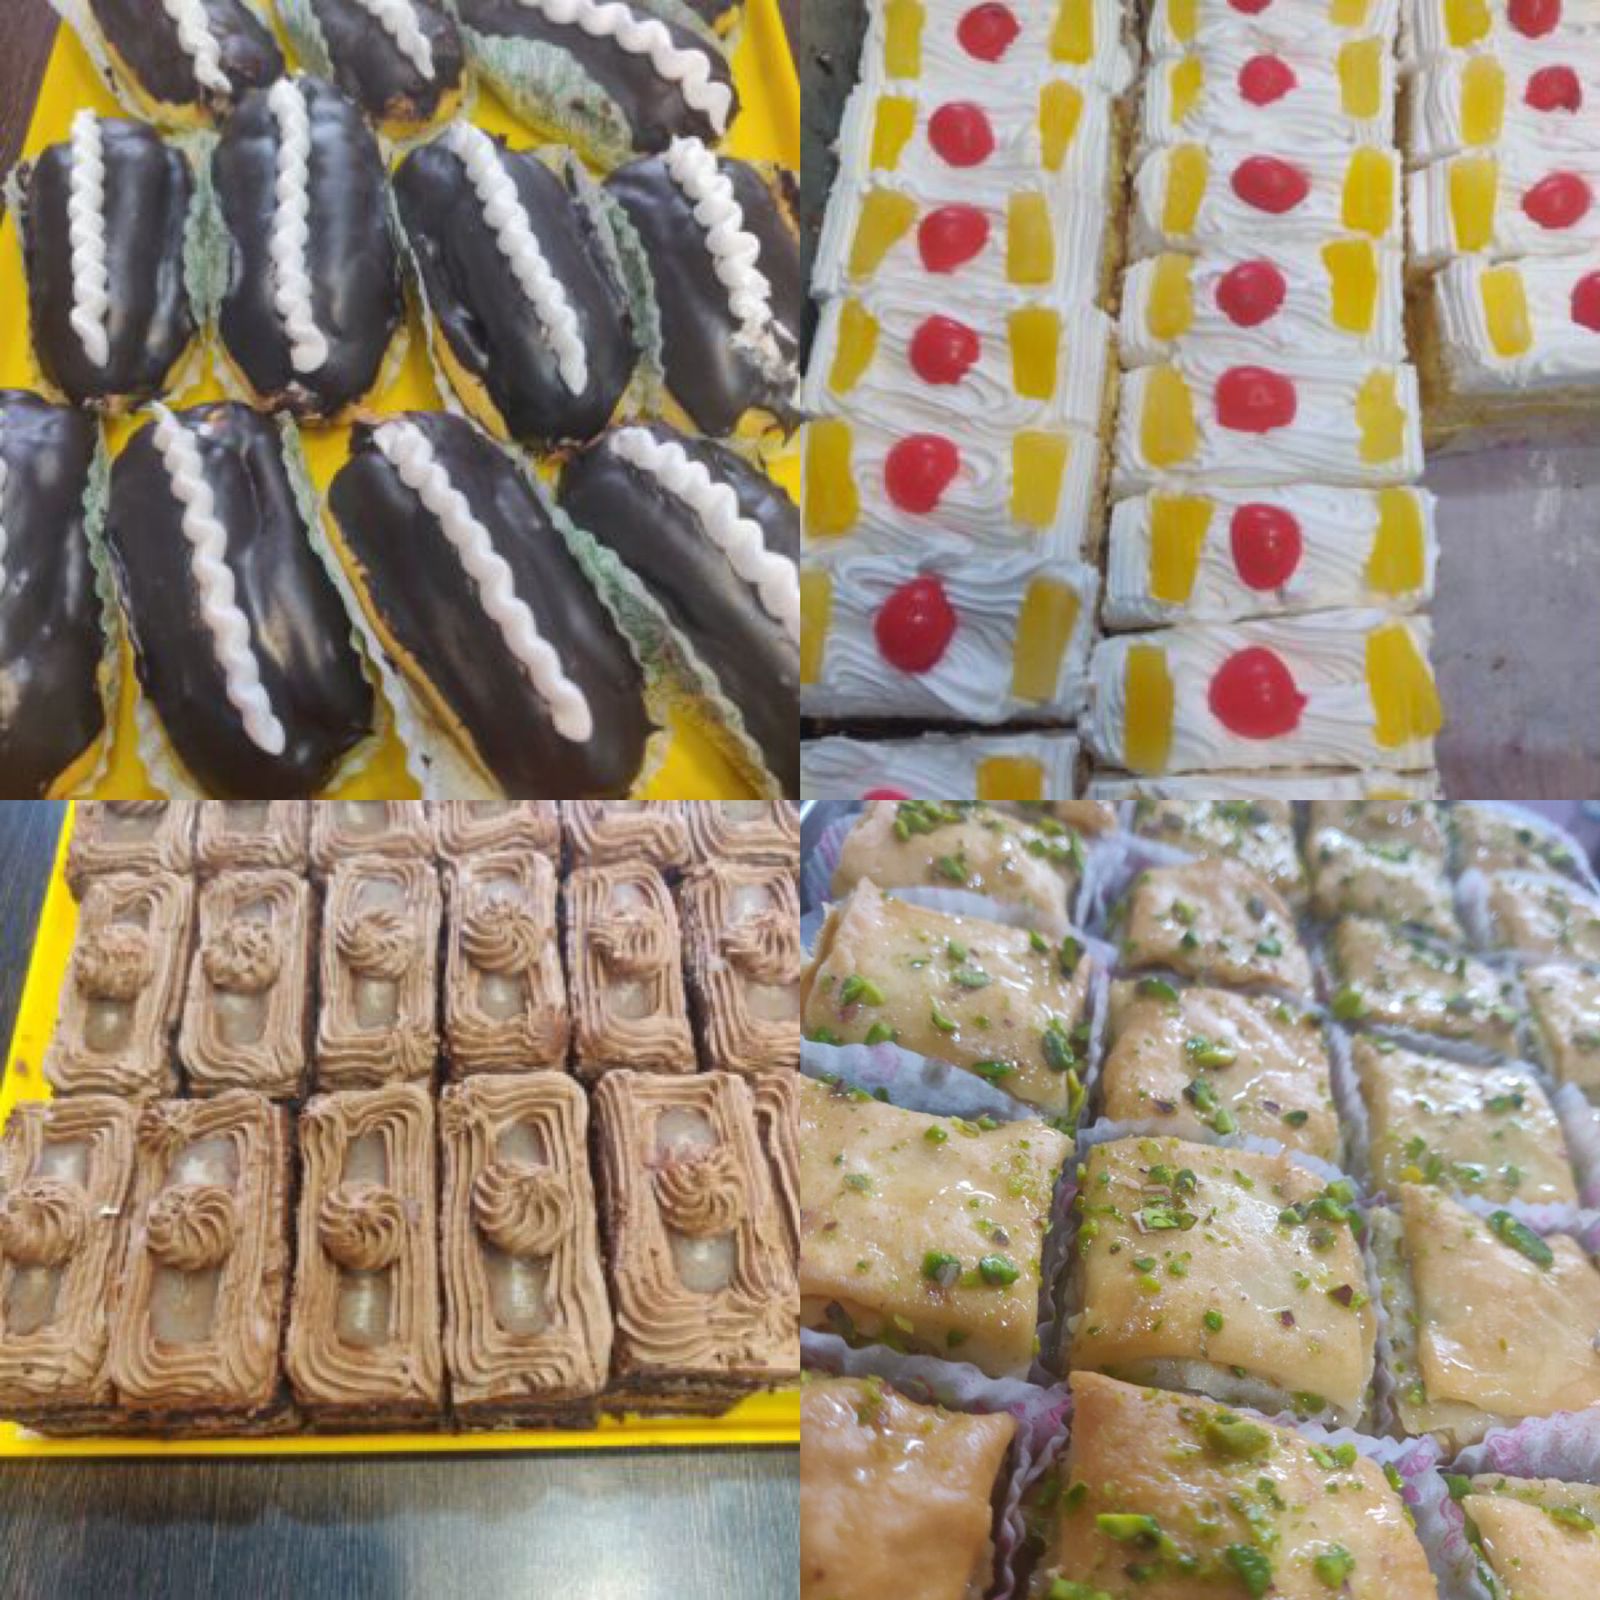 Online Bakeries in Dehradun